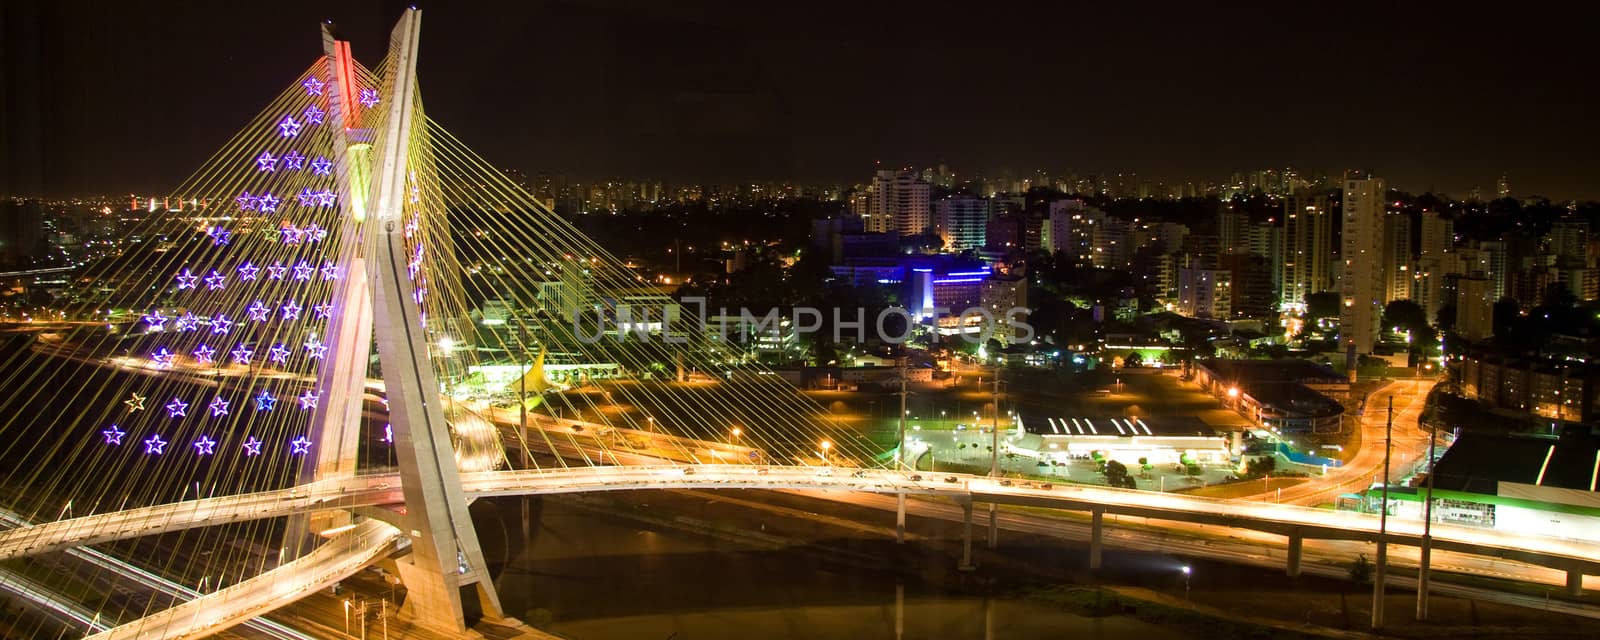 The Octavio Frias de Oliveira bridge by CelsoDiniz